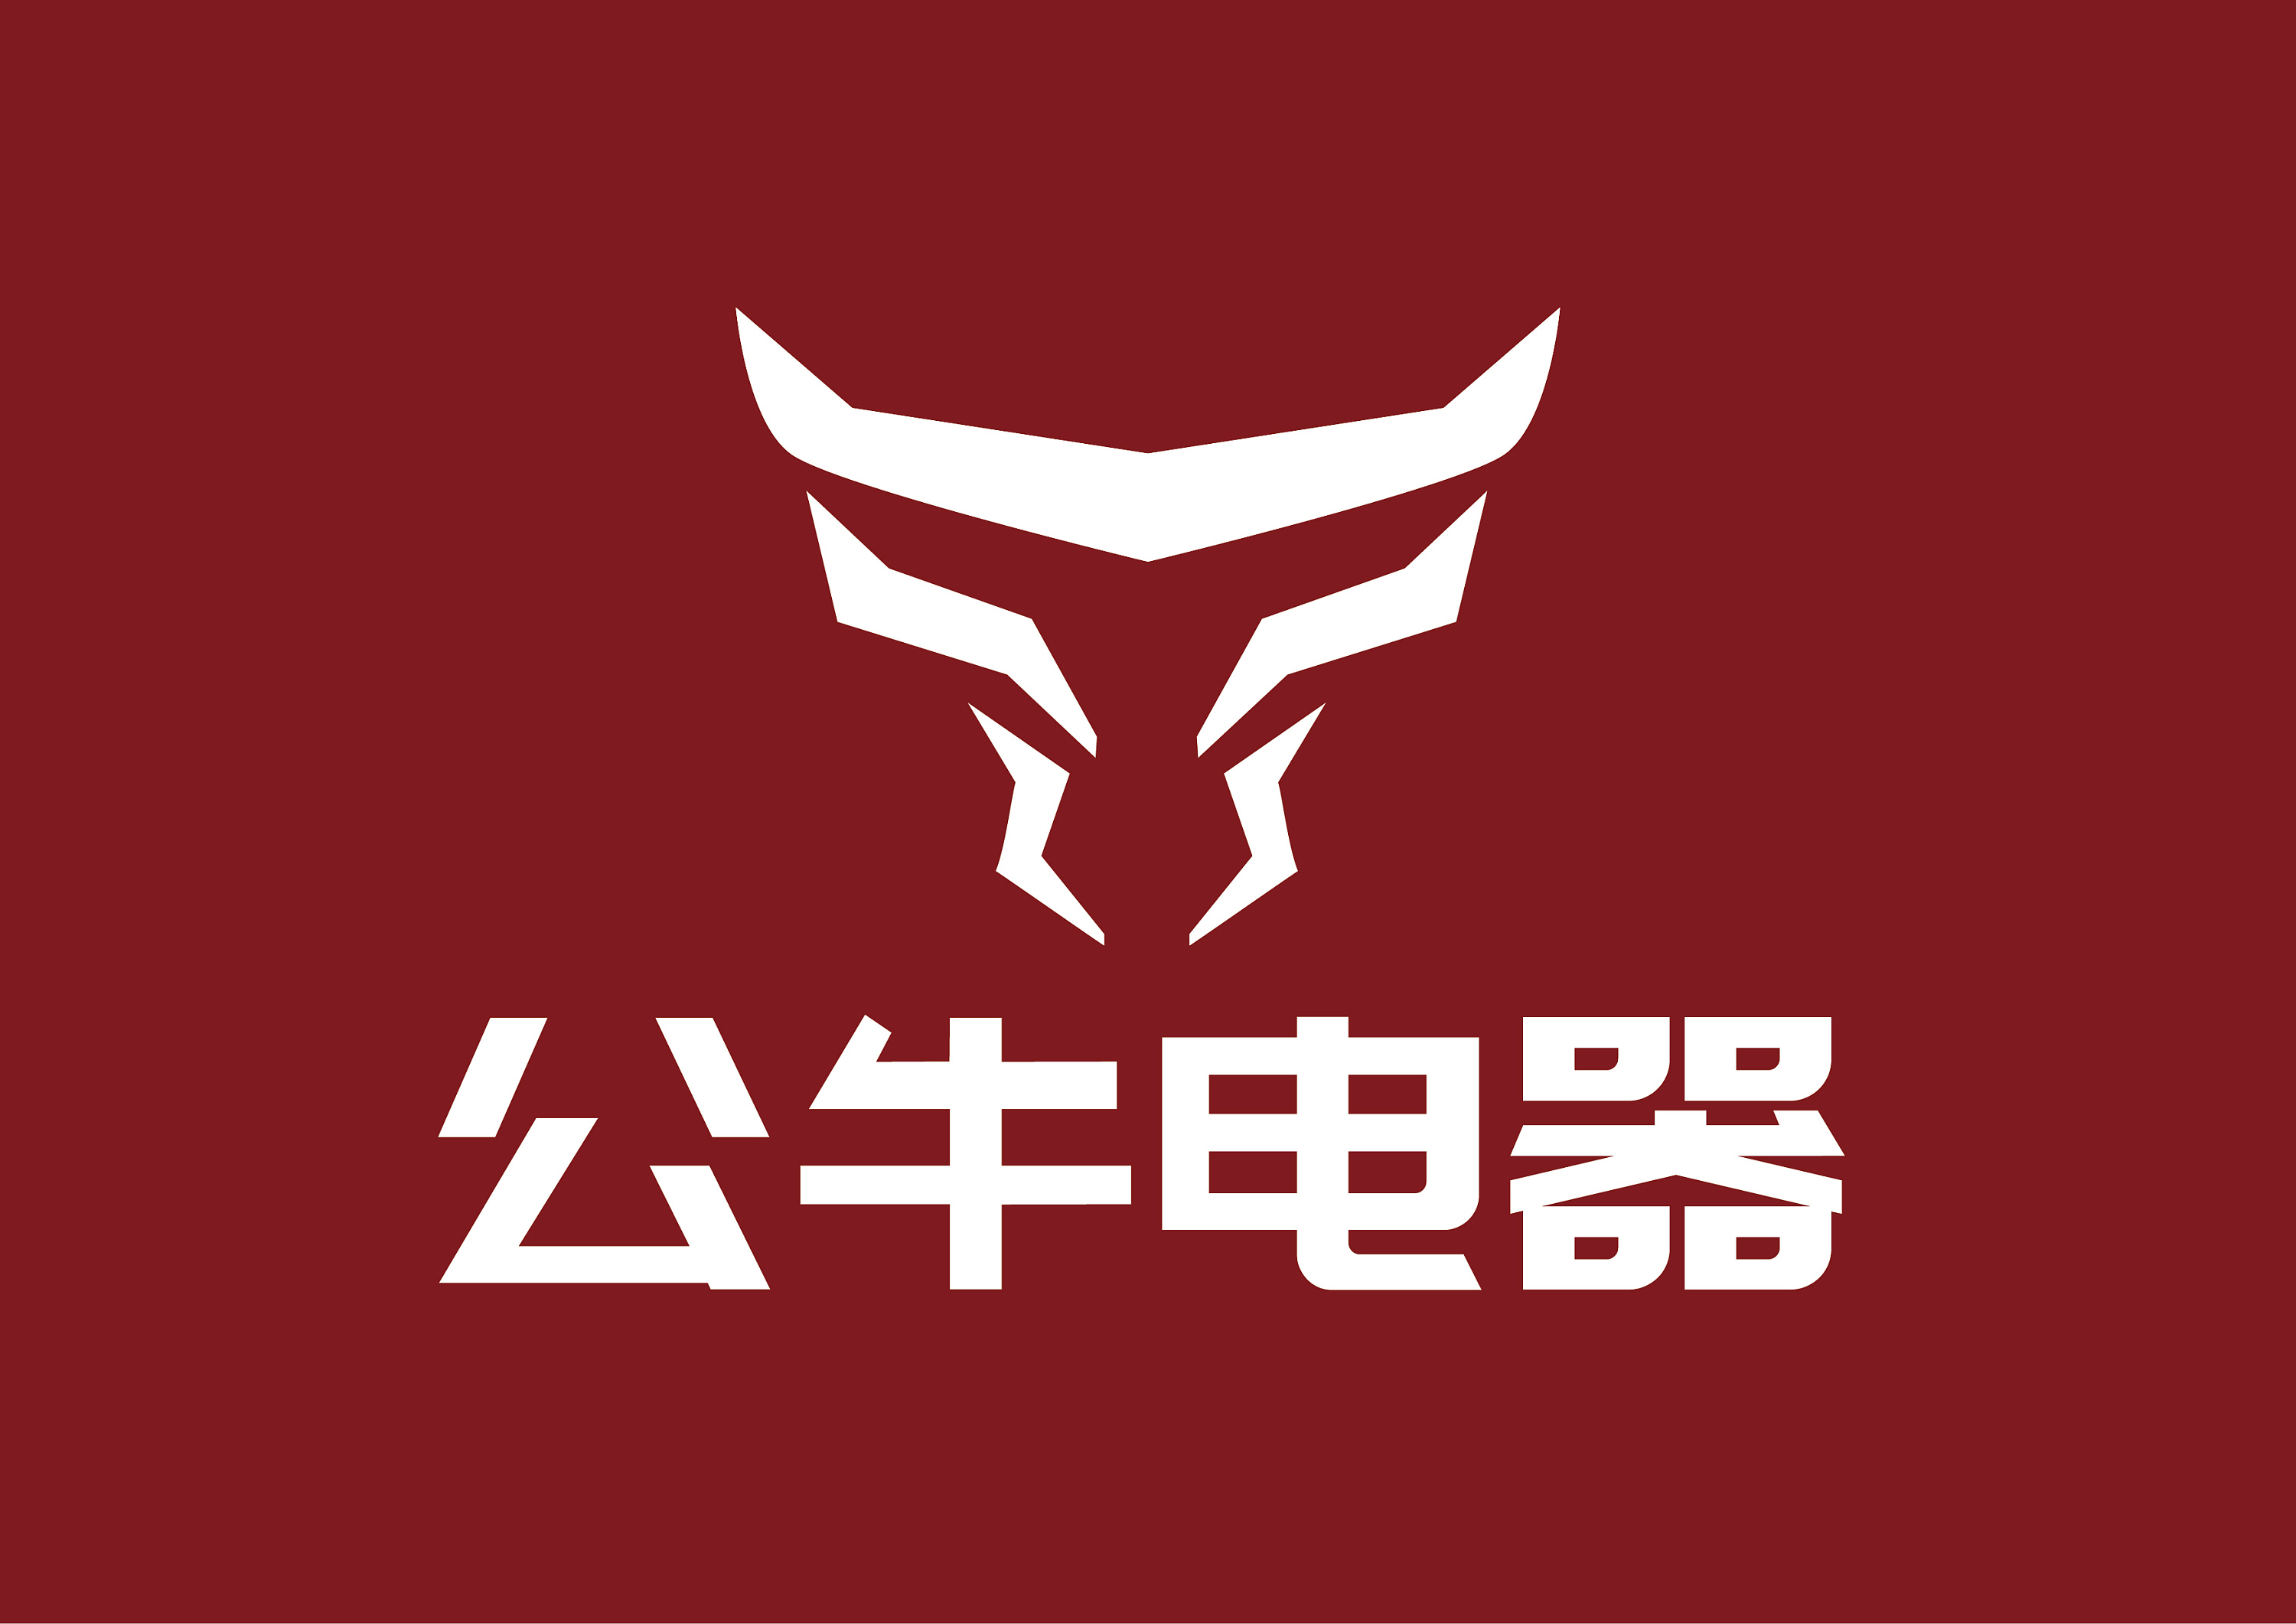 公牛电器logo初步设计